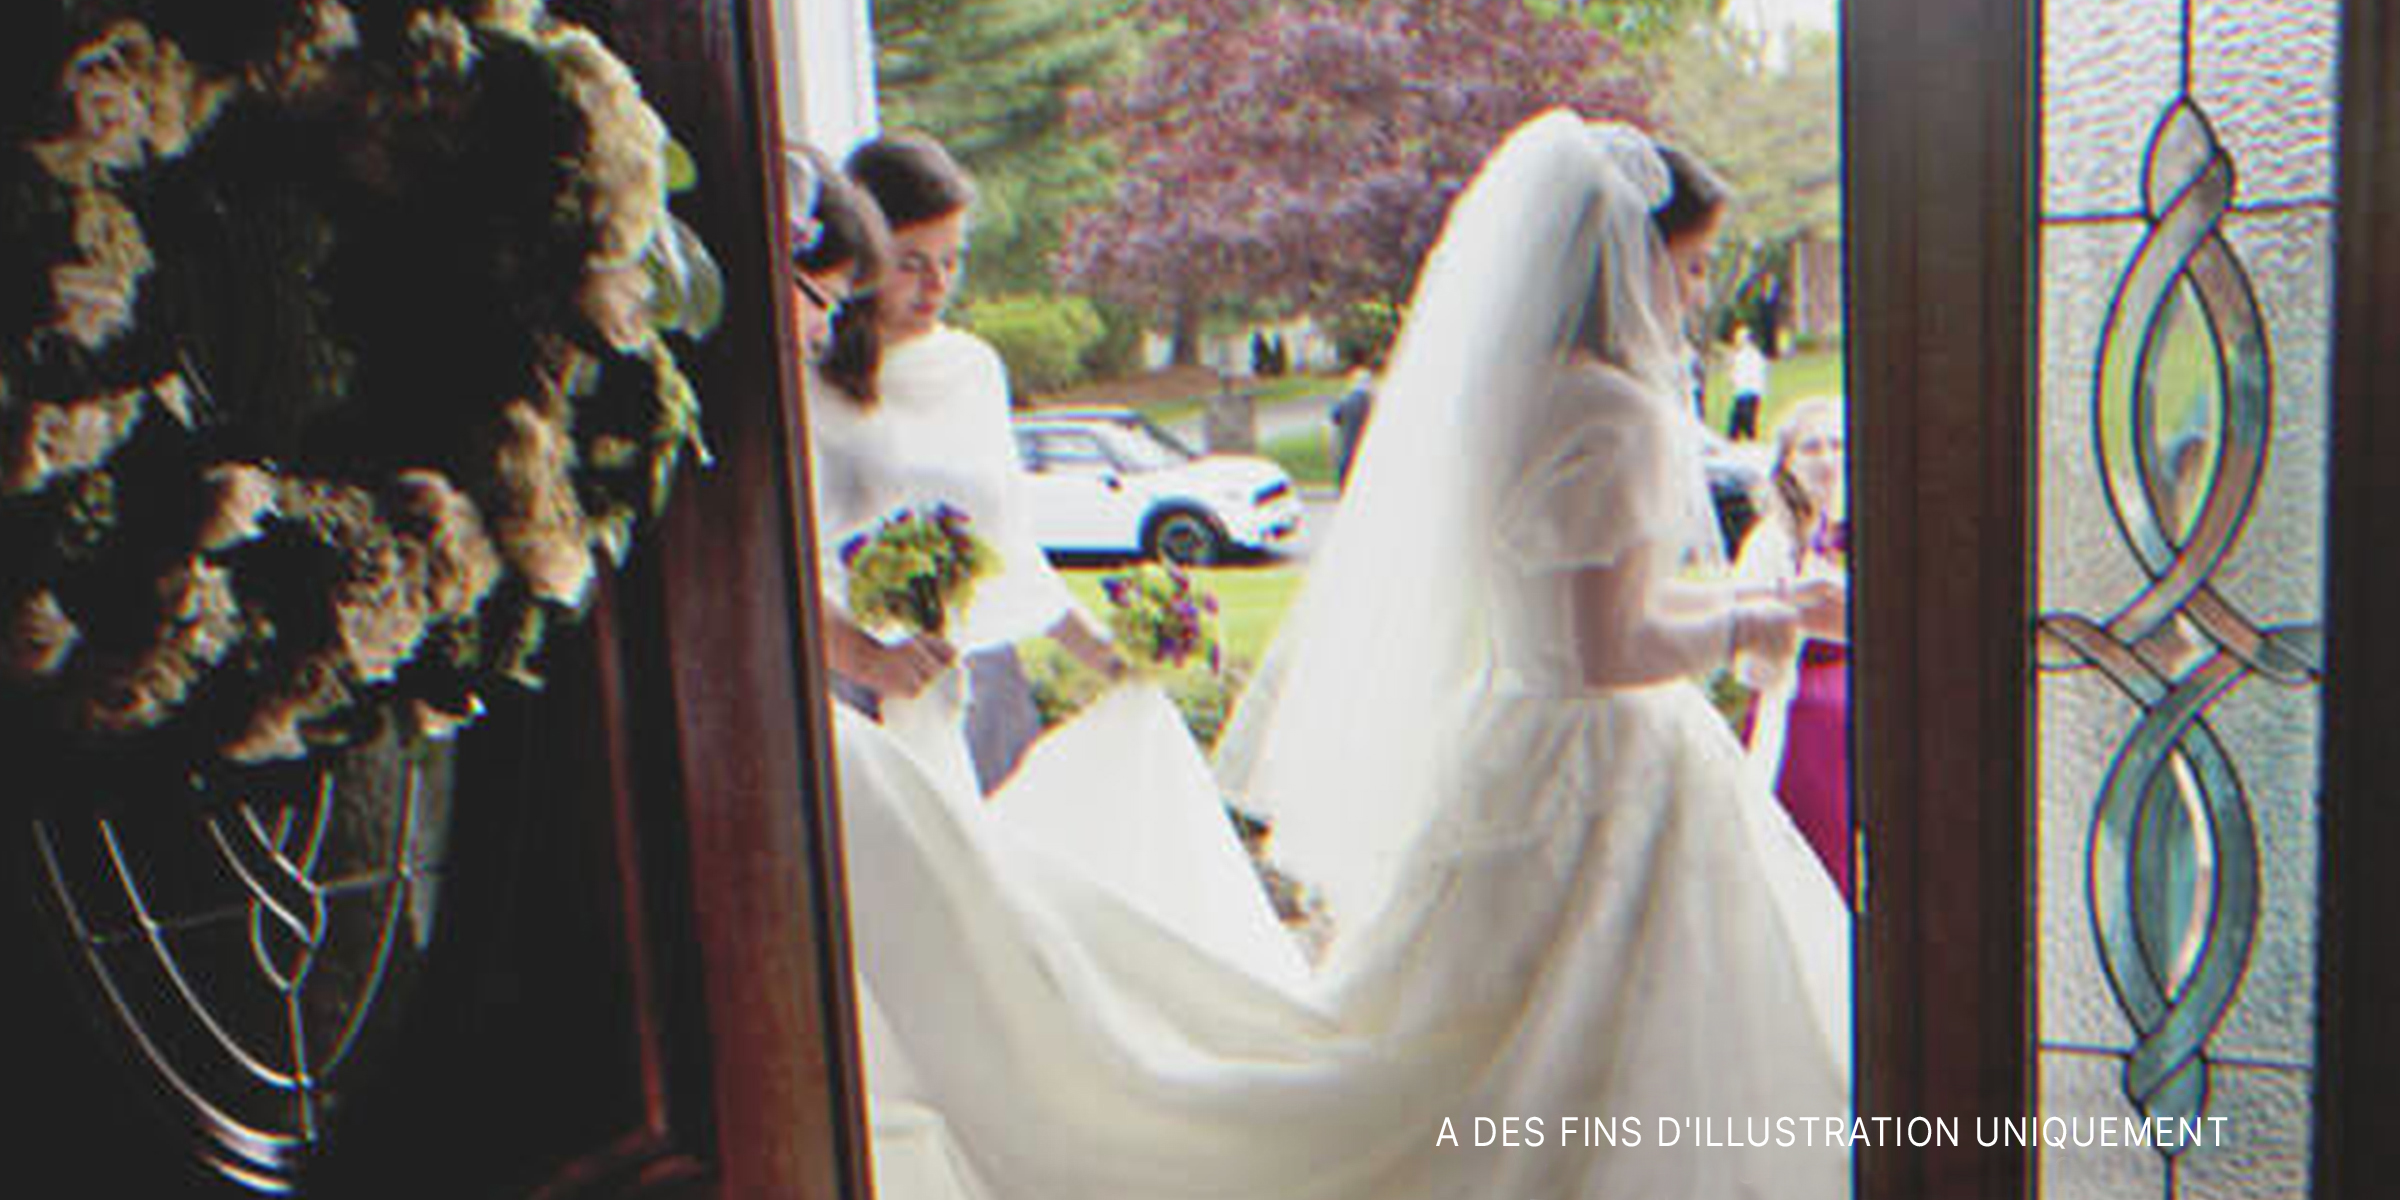 Une mariée le jour de son mariage. | Source : Flickr / Flyinace2000 (CC BY-SA 2.0)